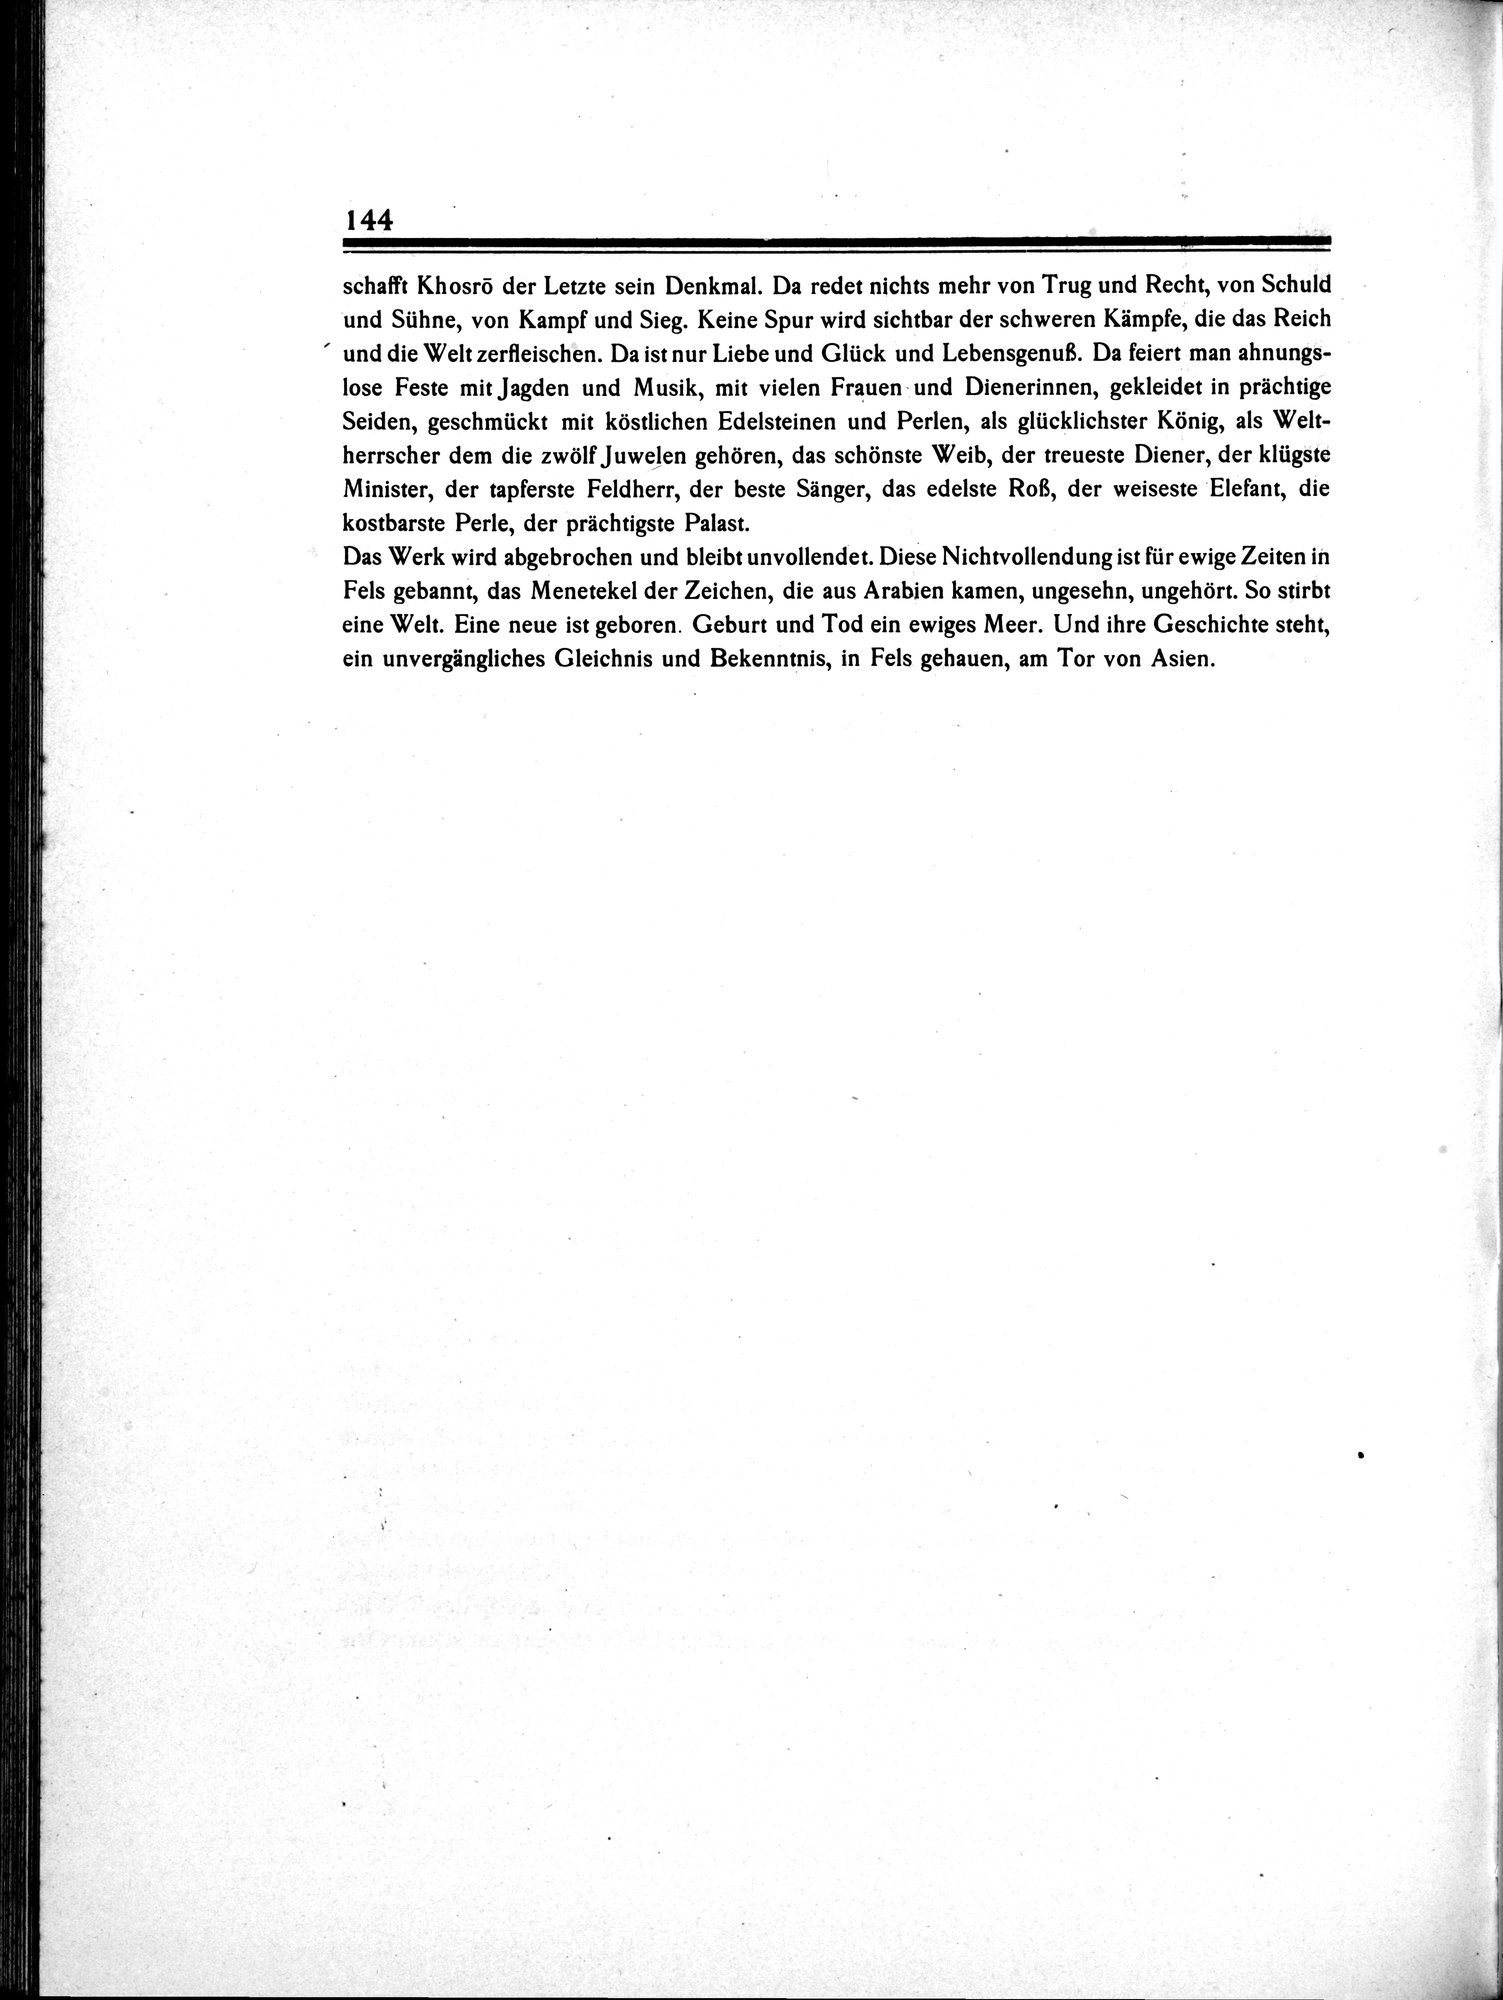 Am Tor von Asien : vol.1 / 162 ページ（白黒高解像度画像）